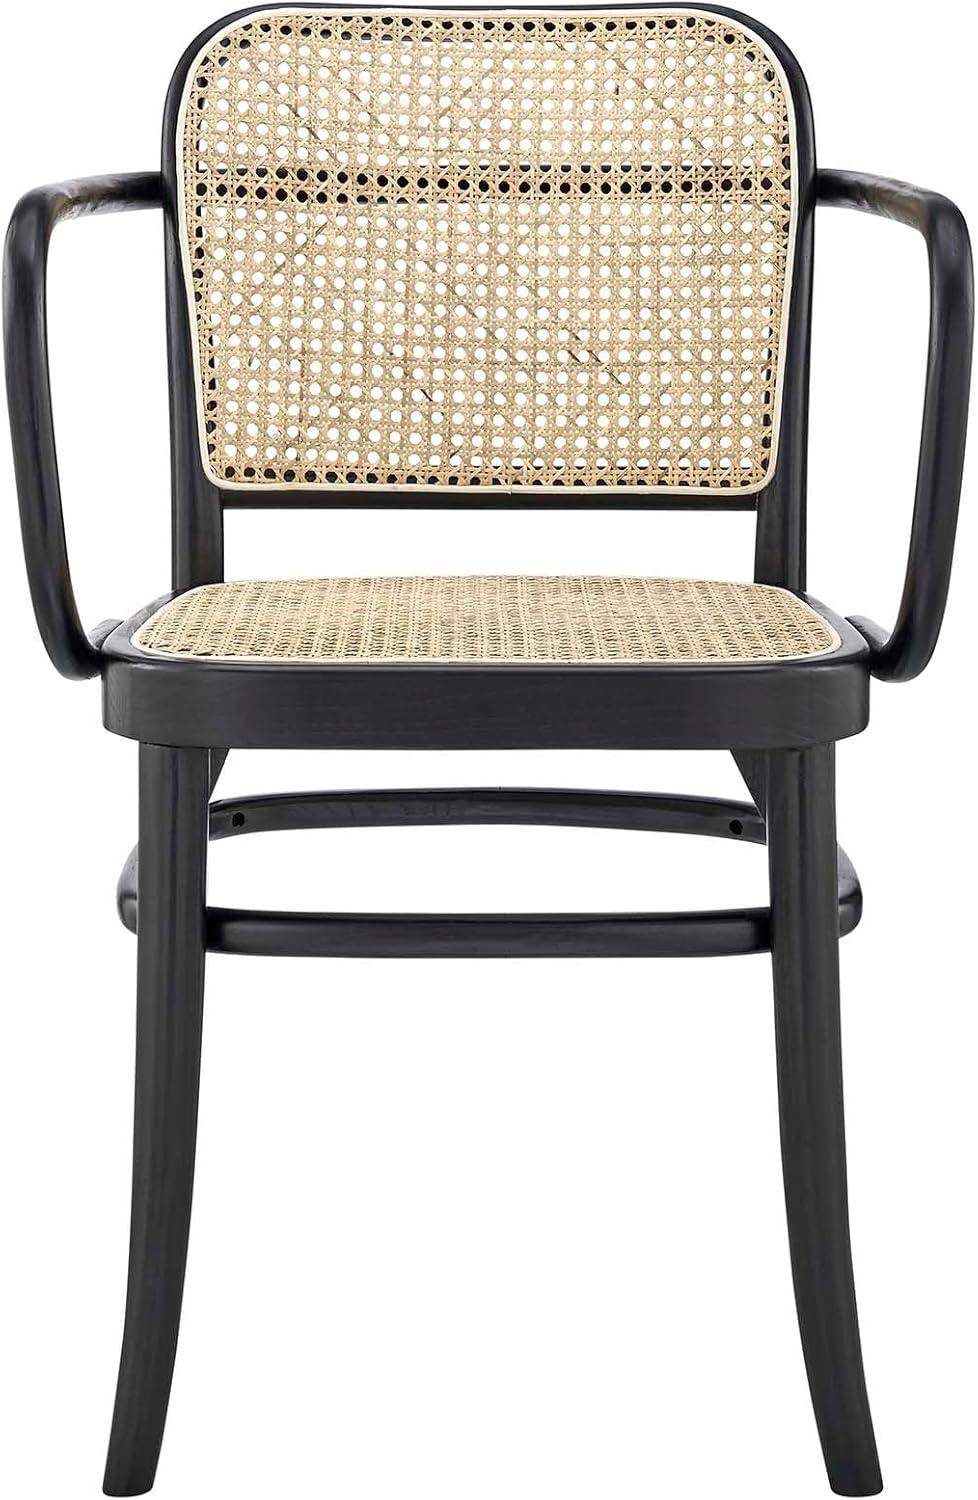 Low Profile Black Elm Wood & Cane Arm Chair